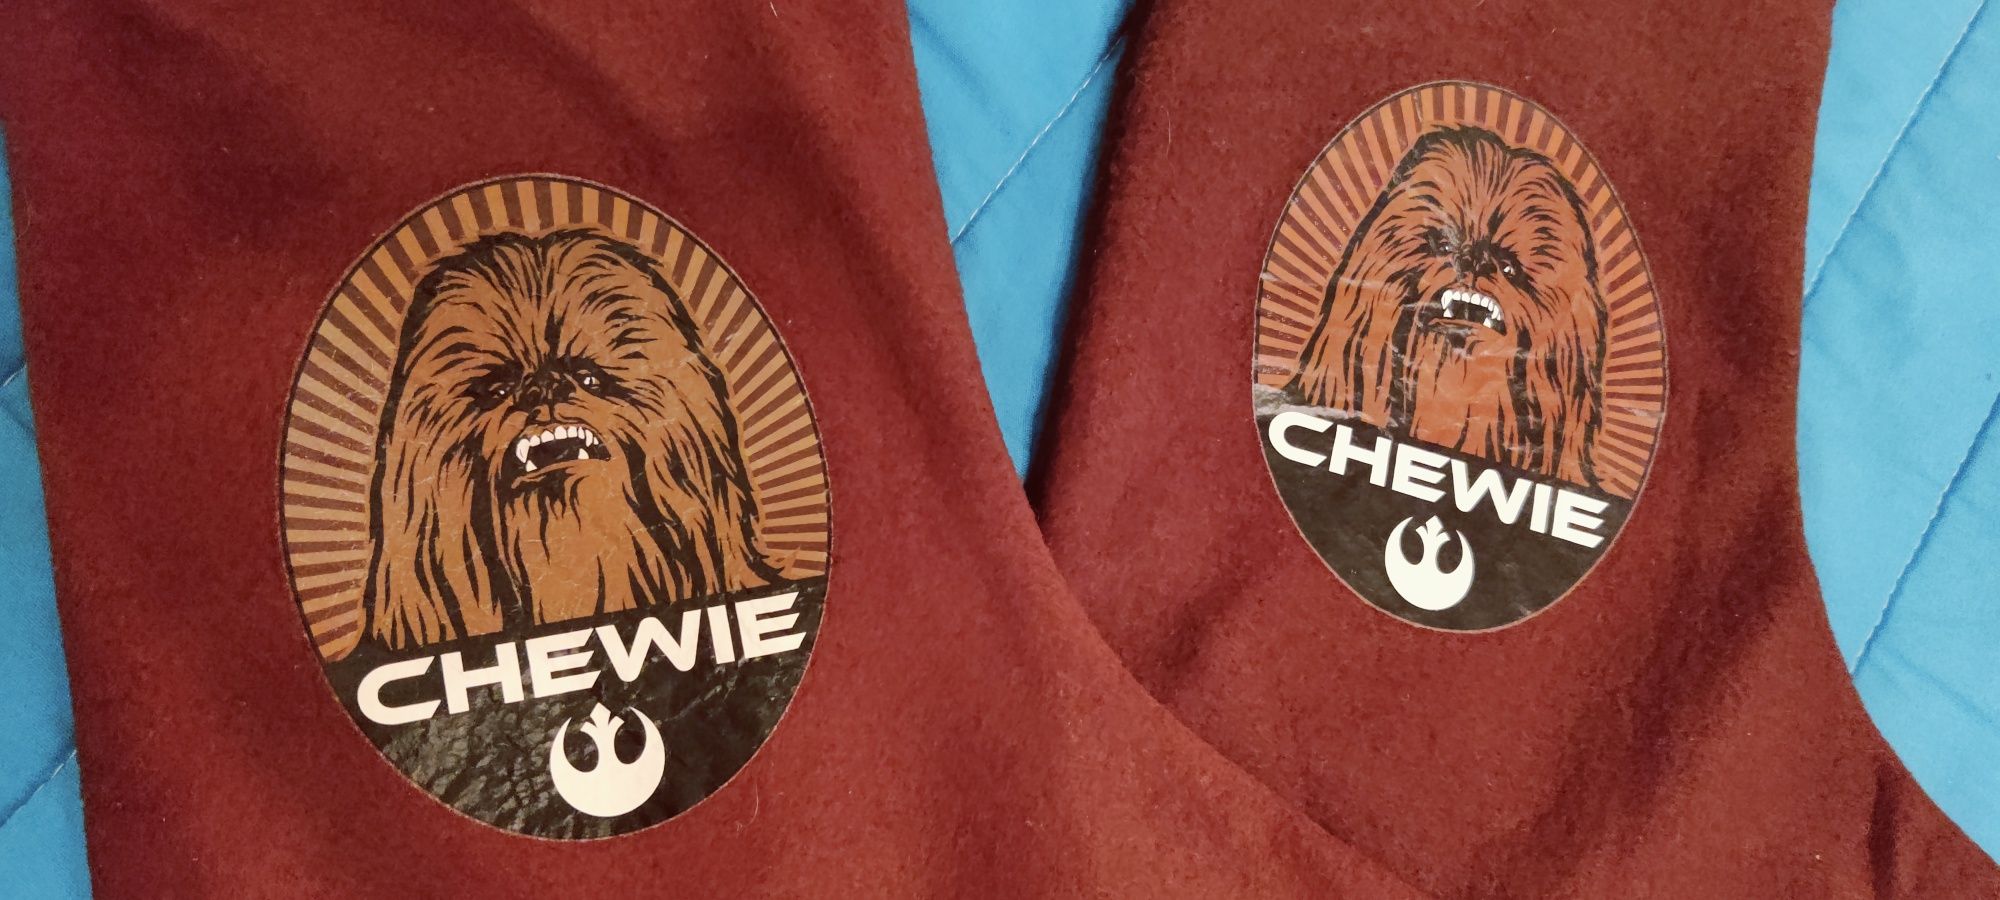 Chewie star wars zestaw skarpet swiatecznych brązowe futro 2 sztuki #